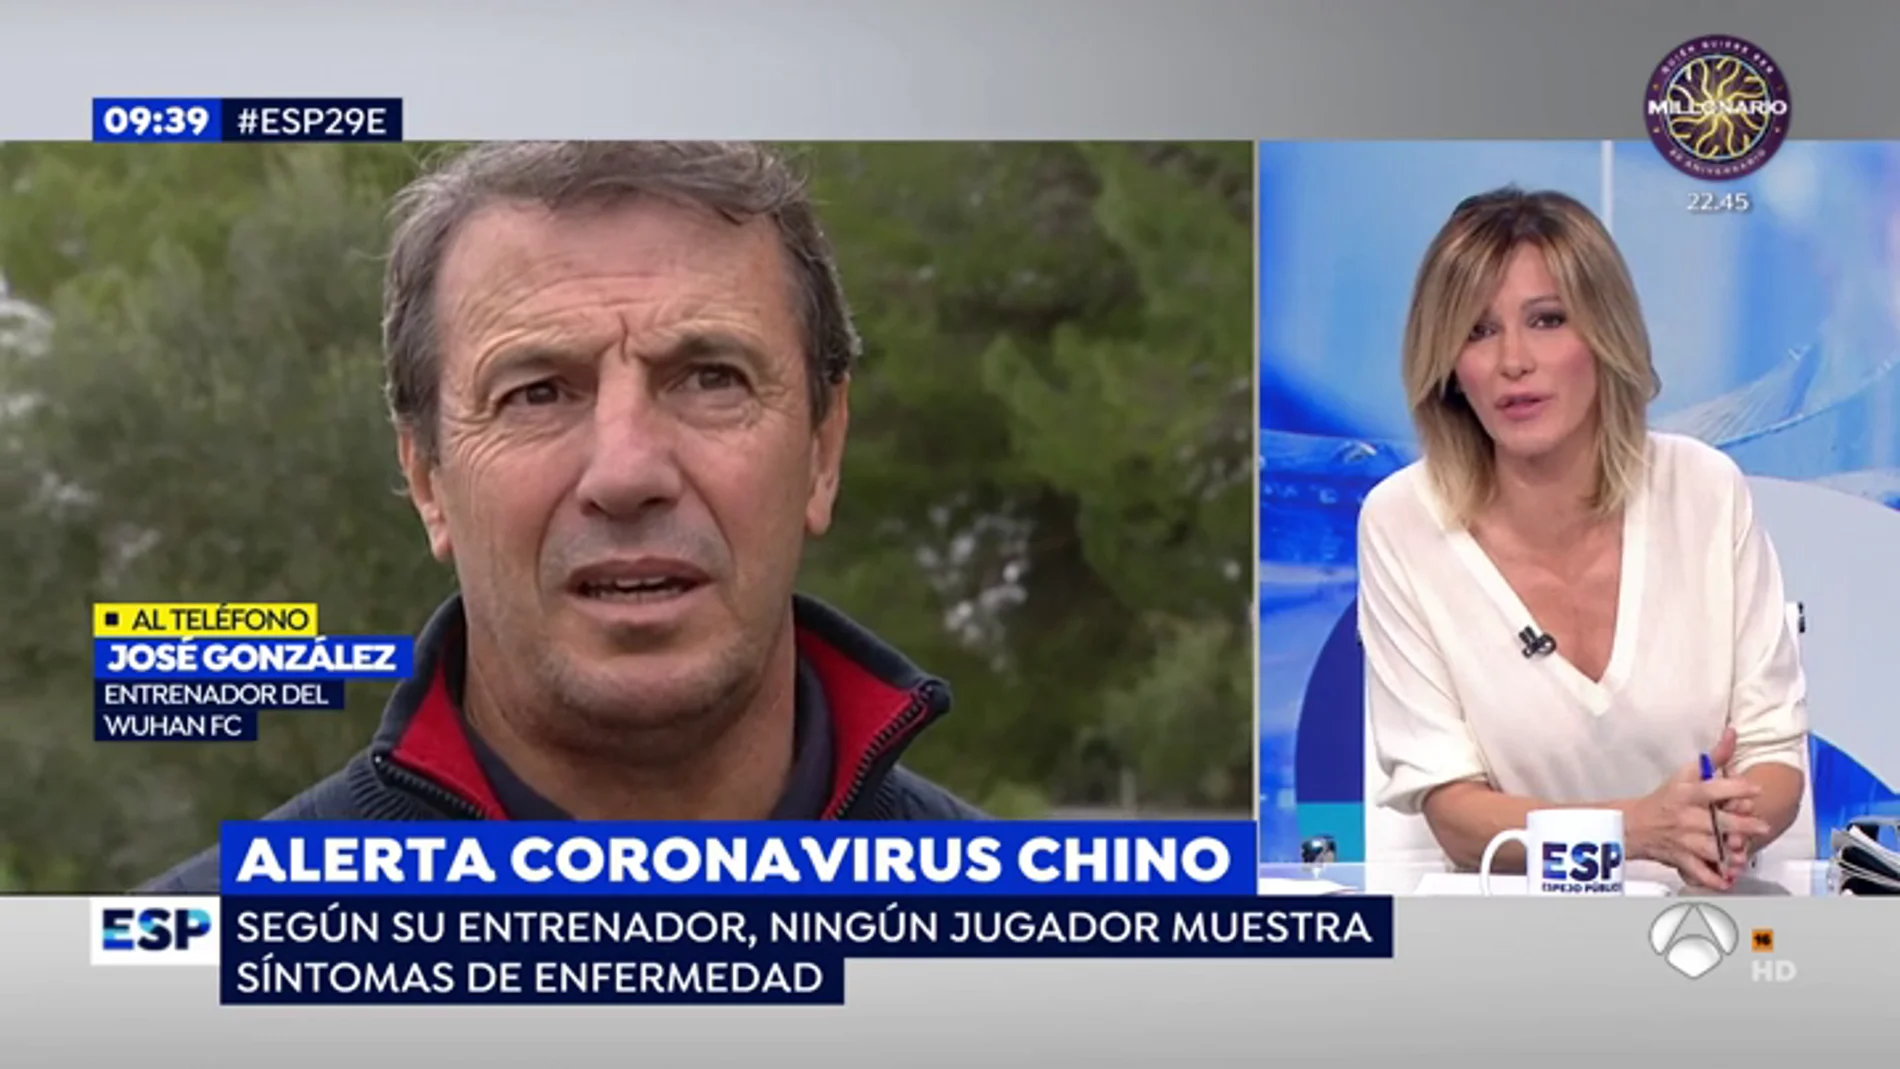 El entrenador español del Wuhan, sobre el coronavirus: "Los jugadores están afectados porque no hay protocolo de la OMS"